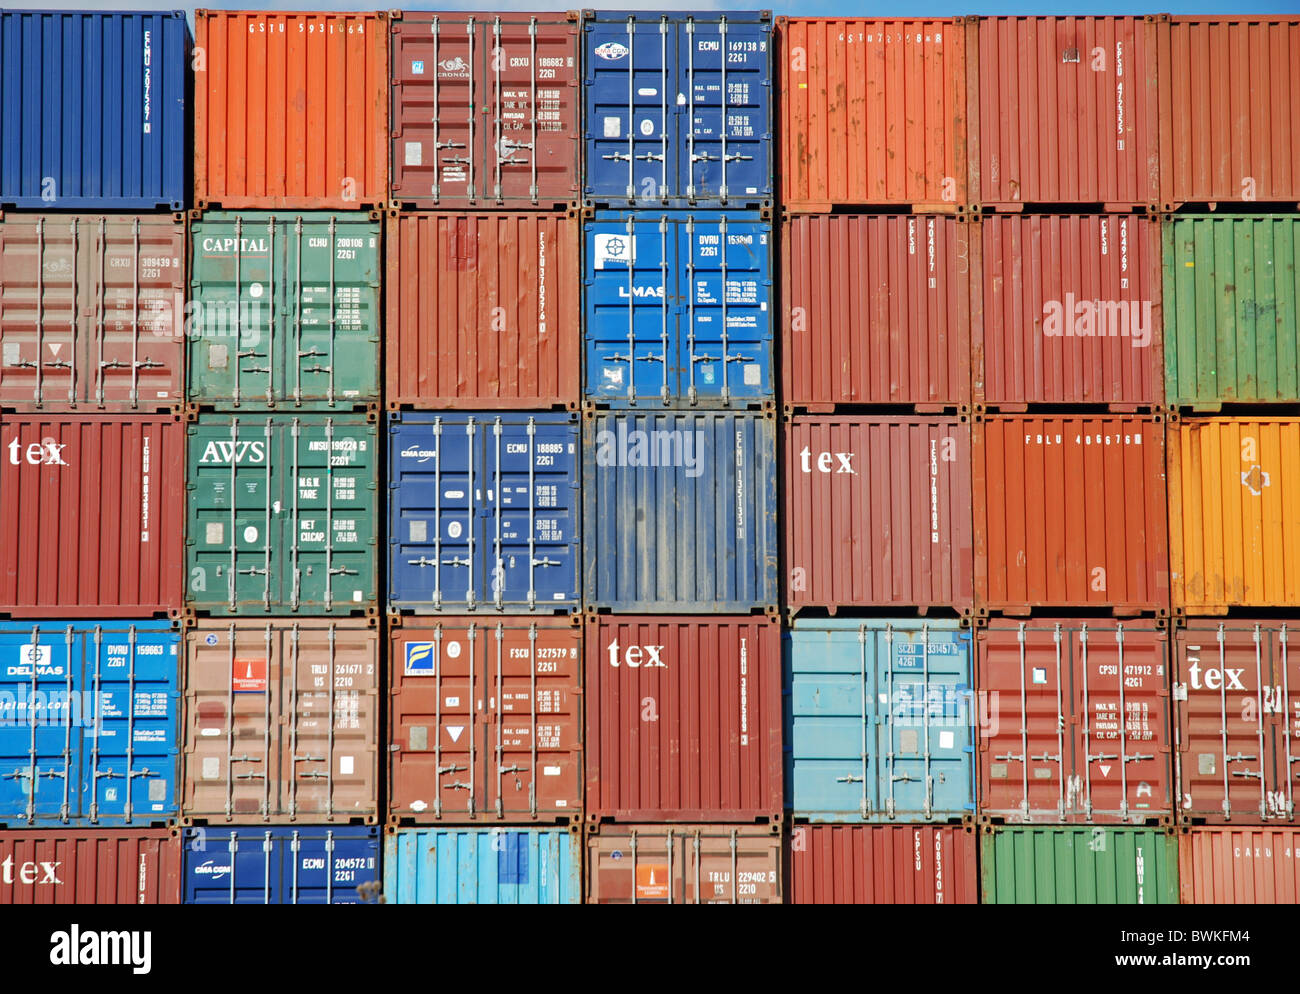 Europa Alemania Ulm freight depot container brillante imagen de llenado de bienes de la industria del transporte de mercancías de carga F Foto de stock